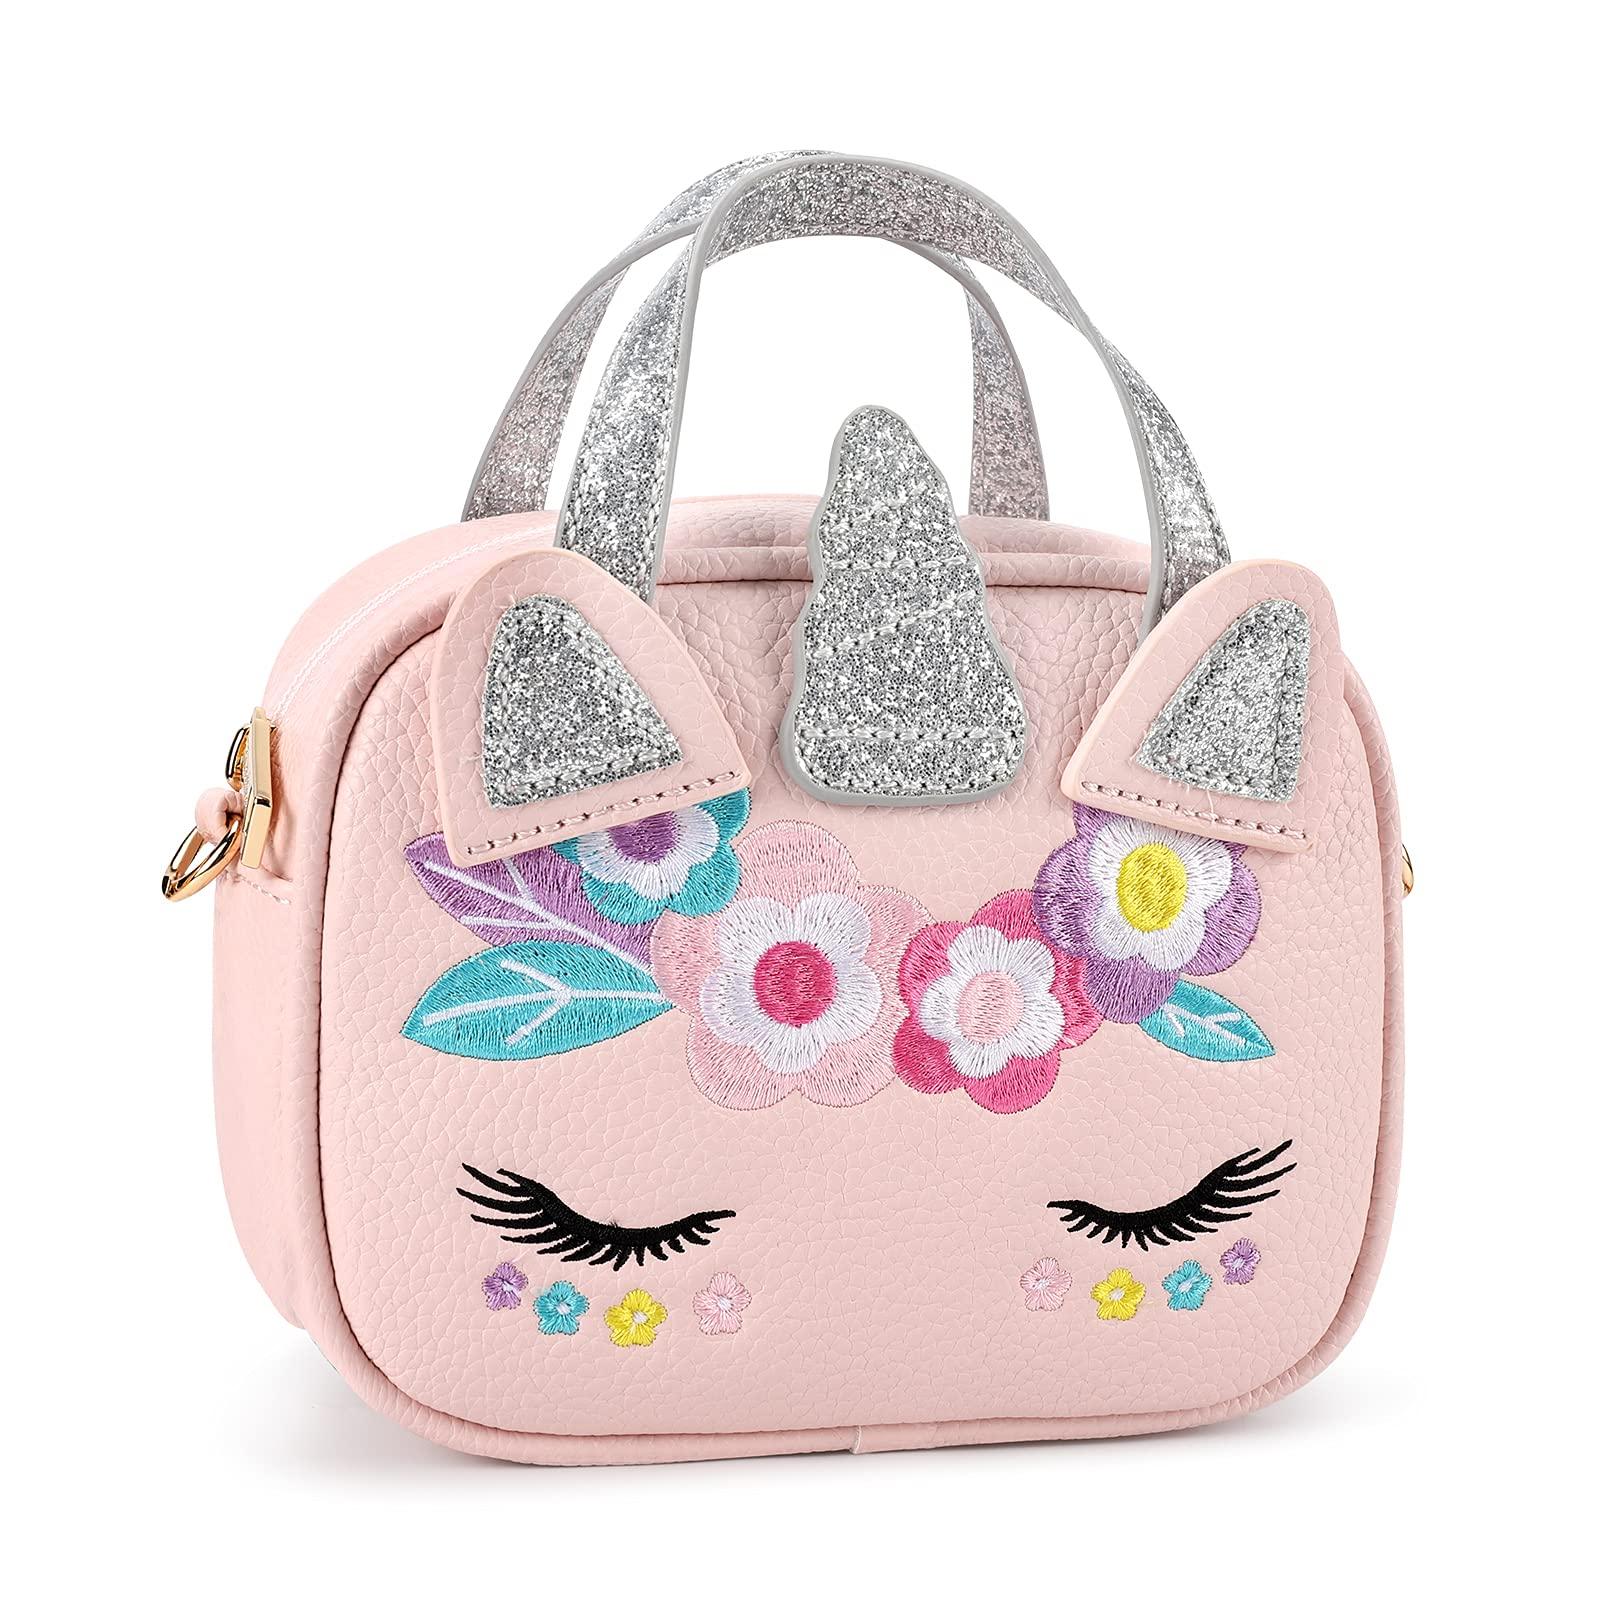 Jasmine Handbag-2021 Christmas Collection Handbag mibasies 